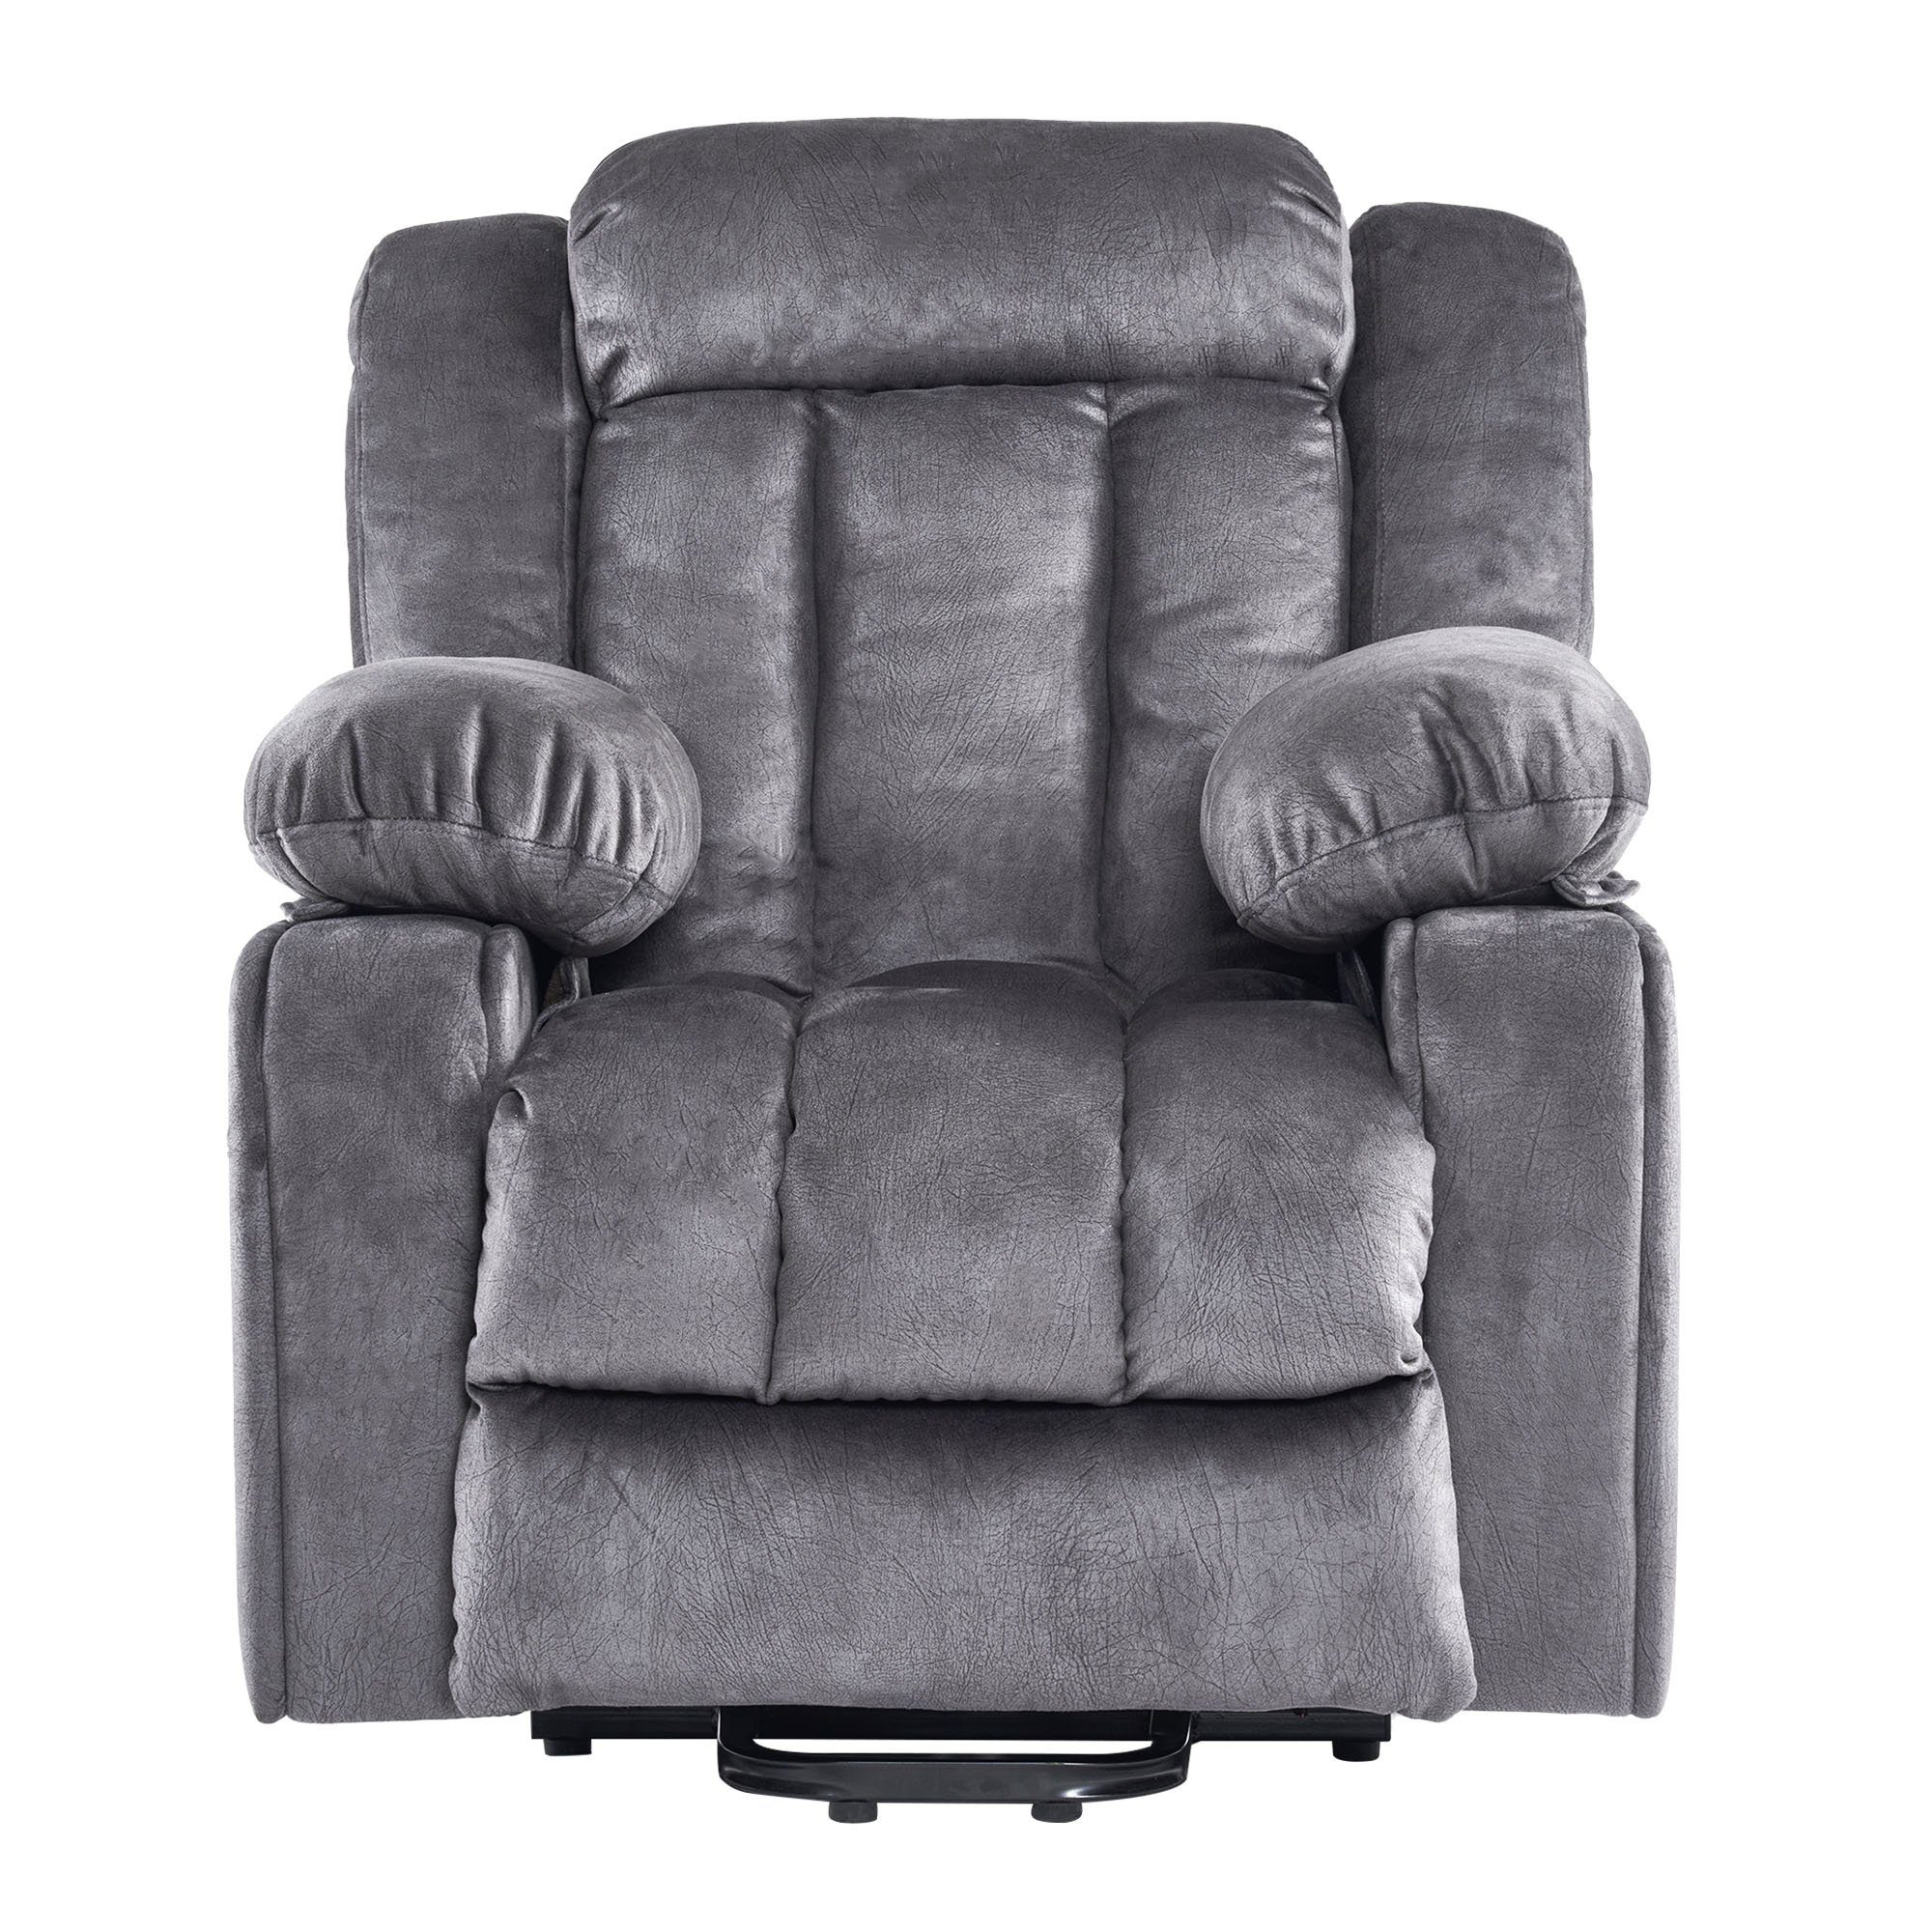 DOTMALL Armlehnstuhl TV-Sessel,elektrischElektrischer, Massagesessel mit Fernbedienung